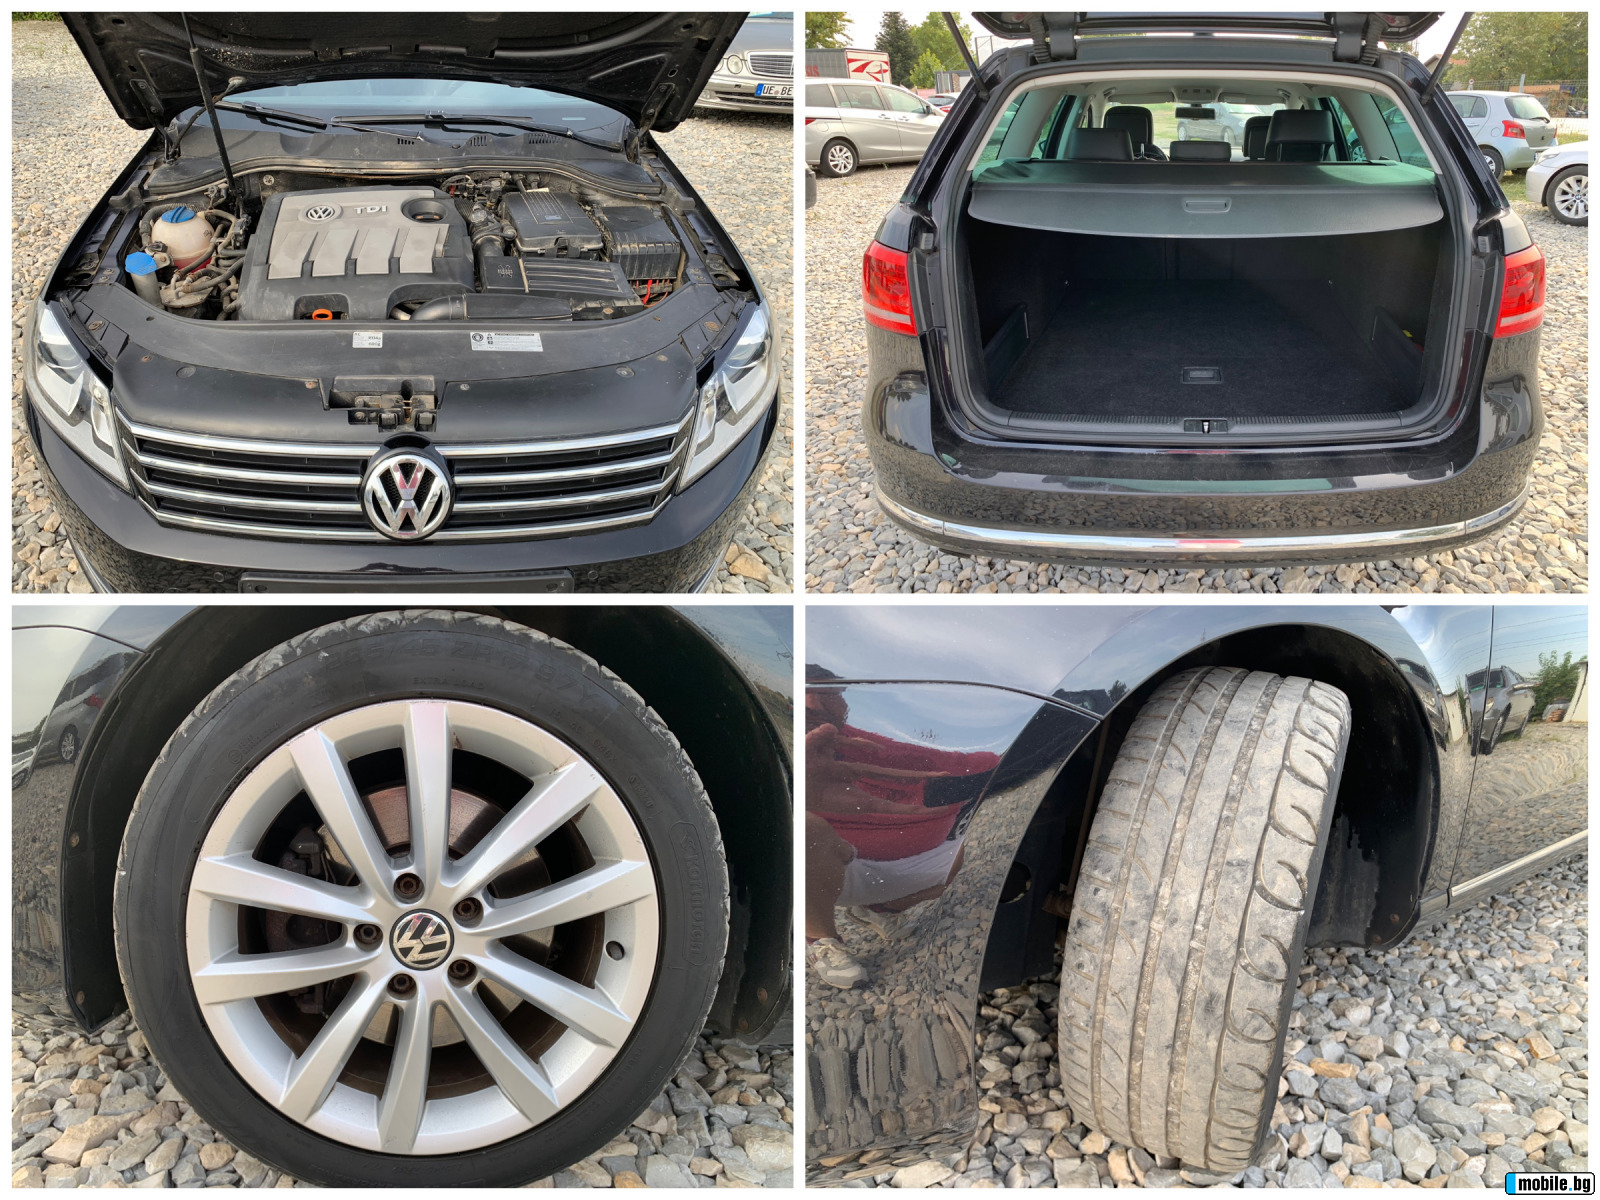 VW Passat 1.6TDI Highline / 105HP / Full optional | Mobile.bg   15